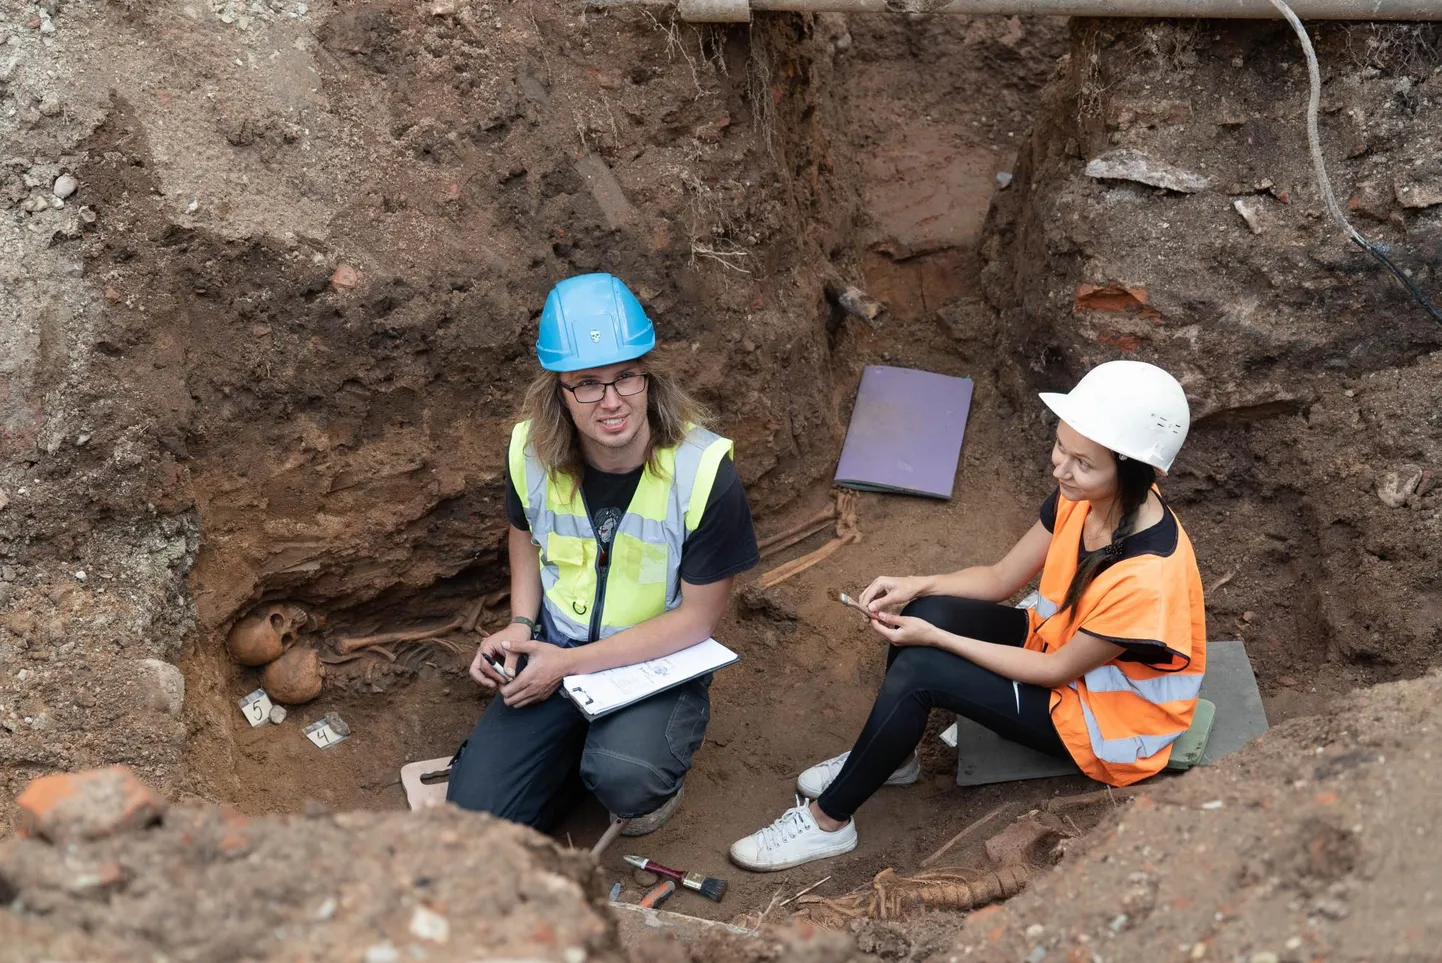 Arheoloogid Martin Malve ja Linda Vilumets kaevavad välja kõik torustike alla jäävad skeletid. Teisipäevase seisuga oli neid 11.